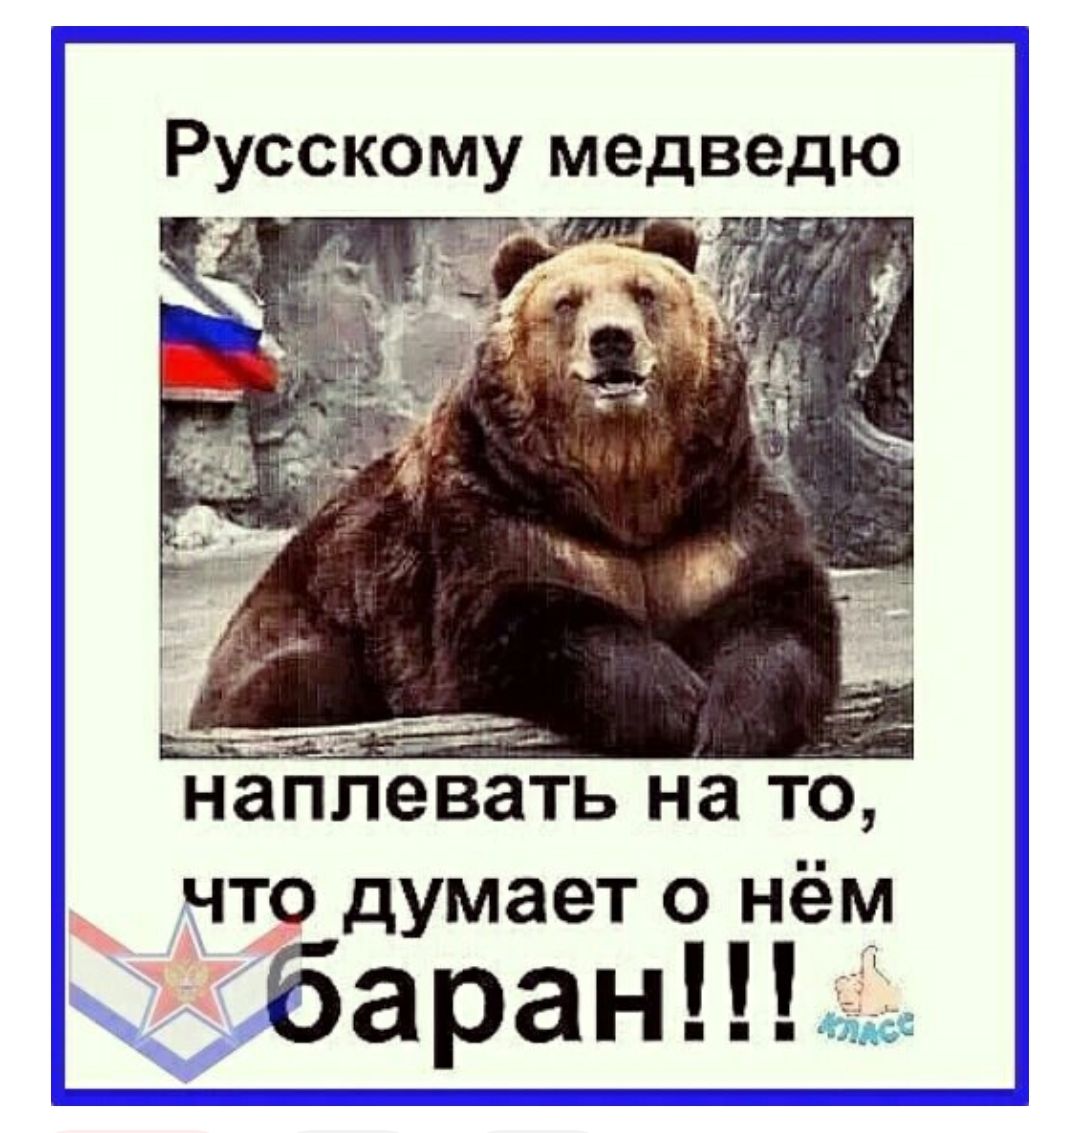 Русскому медведю наплевать на то ЧТО думает О НёМ баранпъе